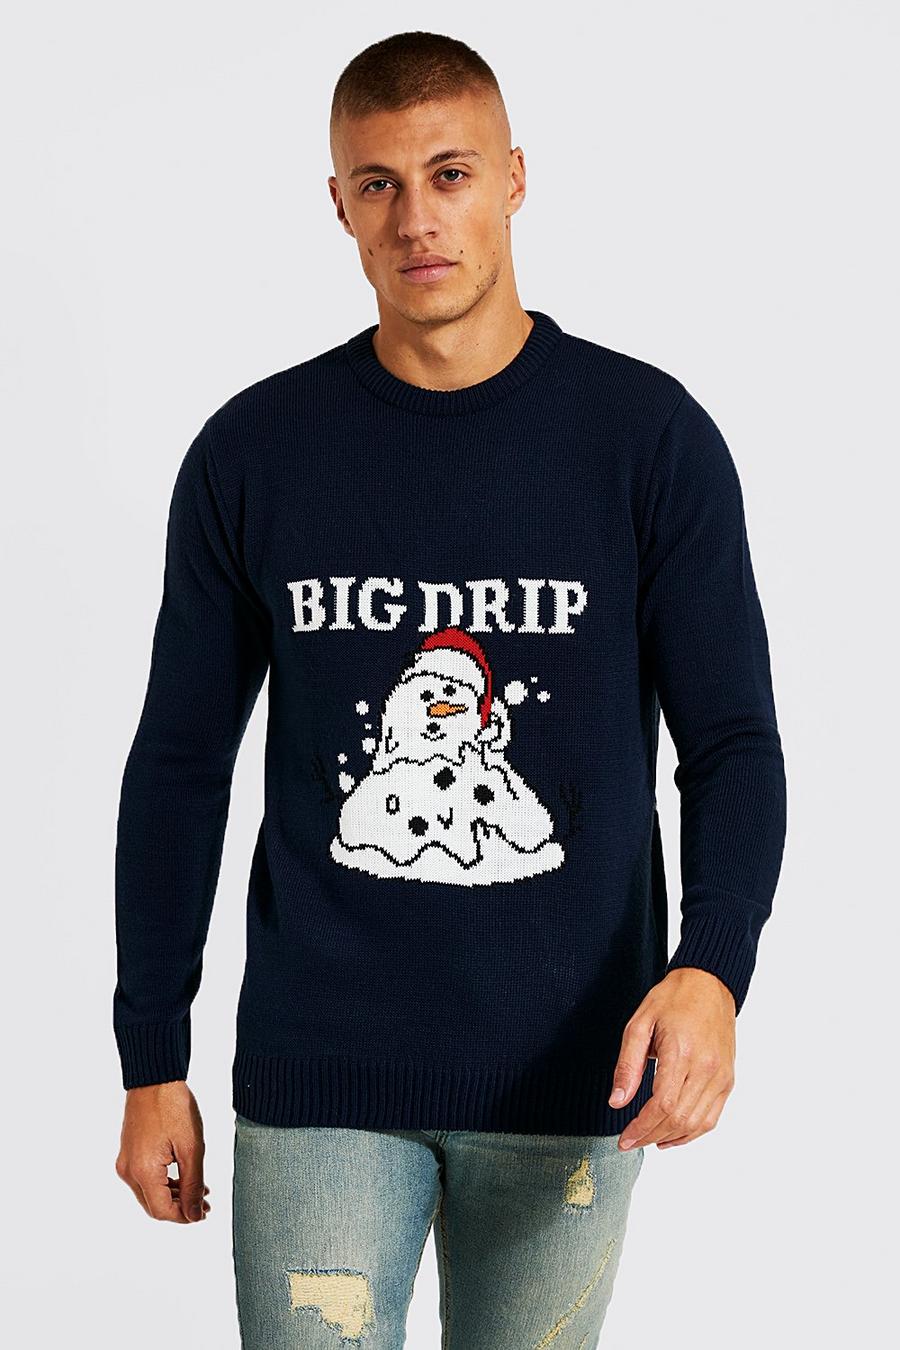 Maglione natalizio con pupazzo di neve e scritta Big Drip, Navy blu oltremare